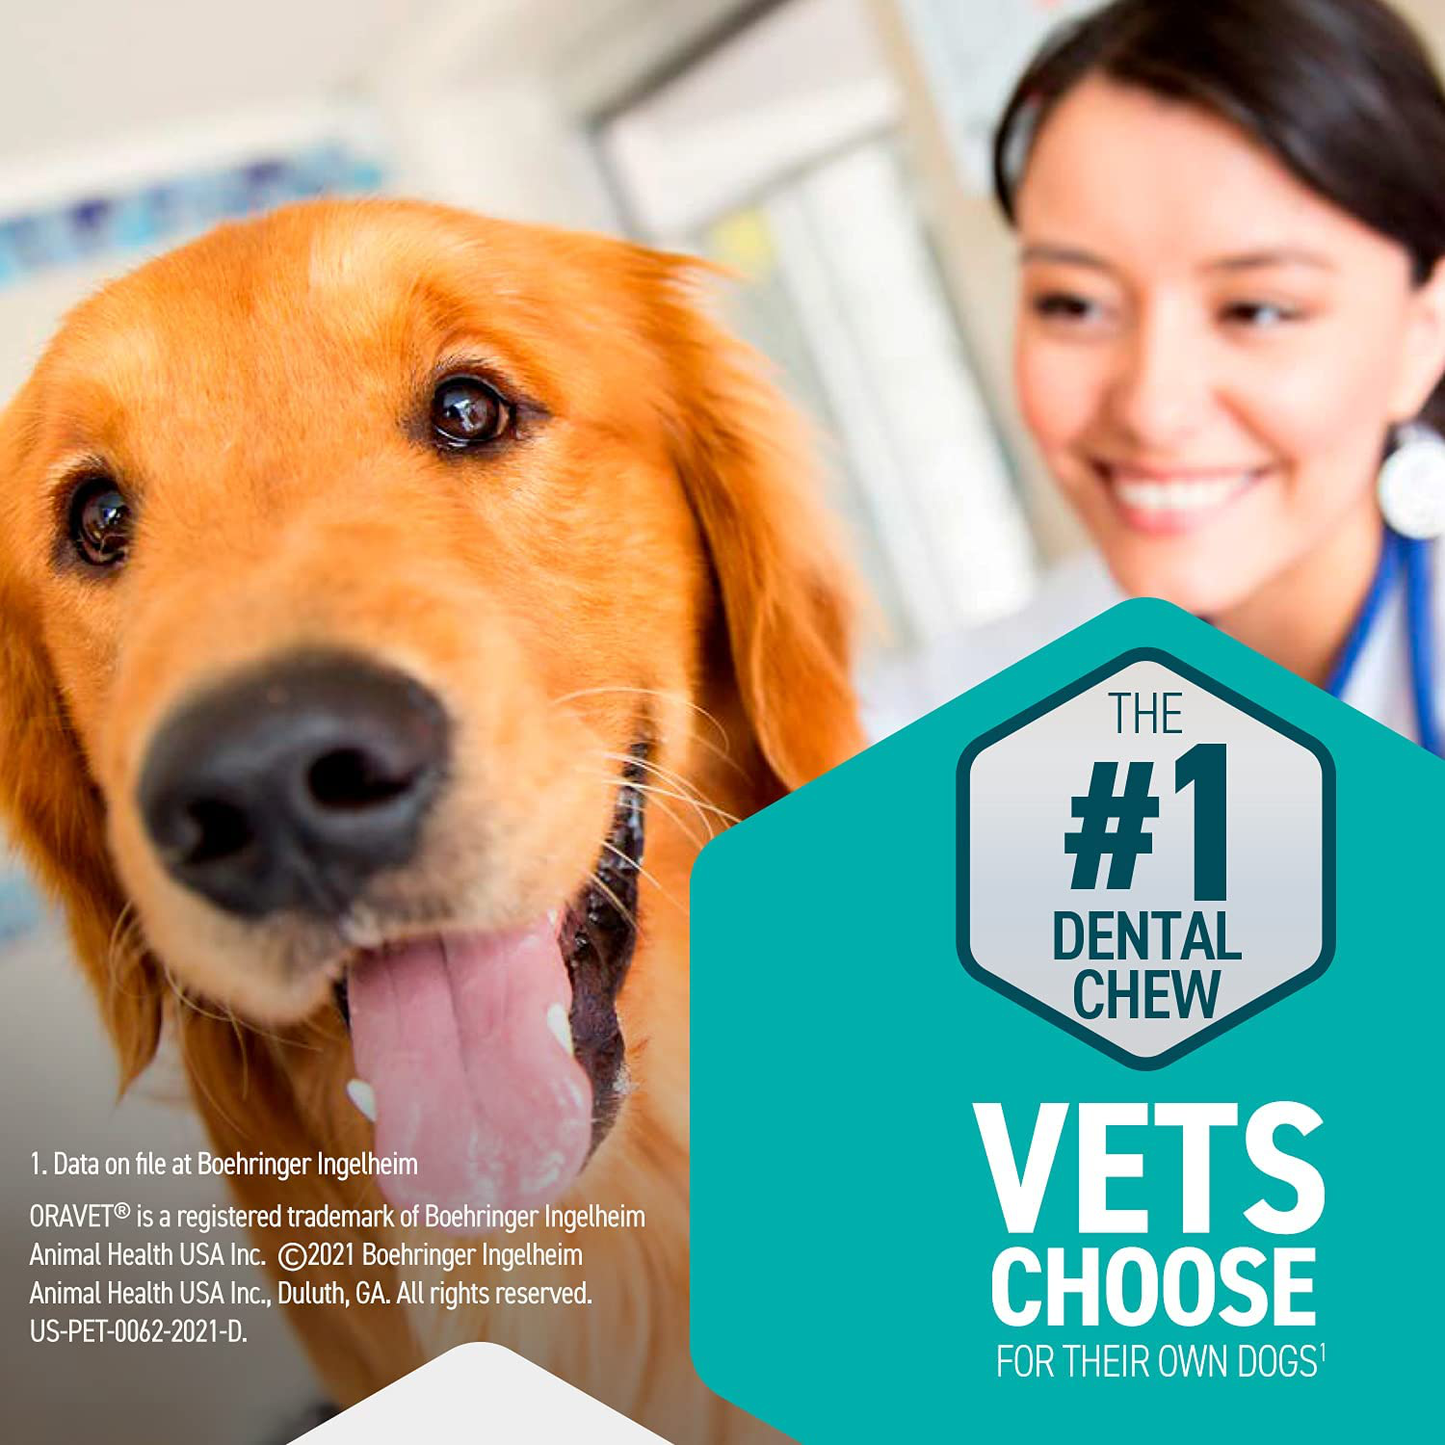 Oravet Dental Hygiene Chews for Medium Dogs 25-50 Lbs Animals & Pet Supplies > Pet Supplies > Dog Supplies > Dog Treats OraVet   